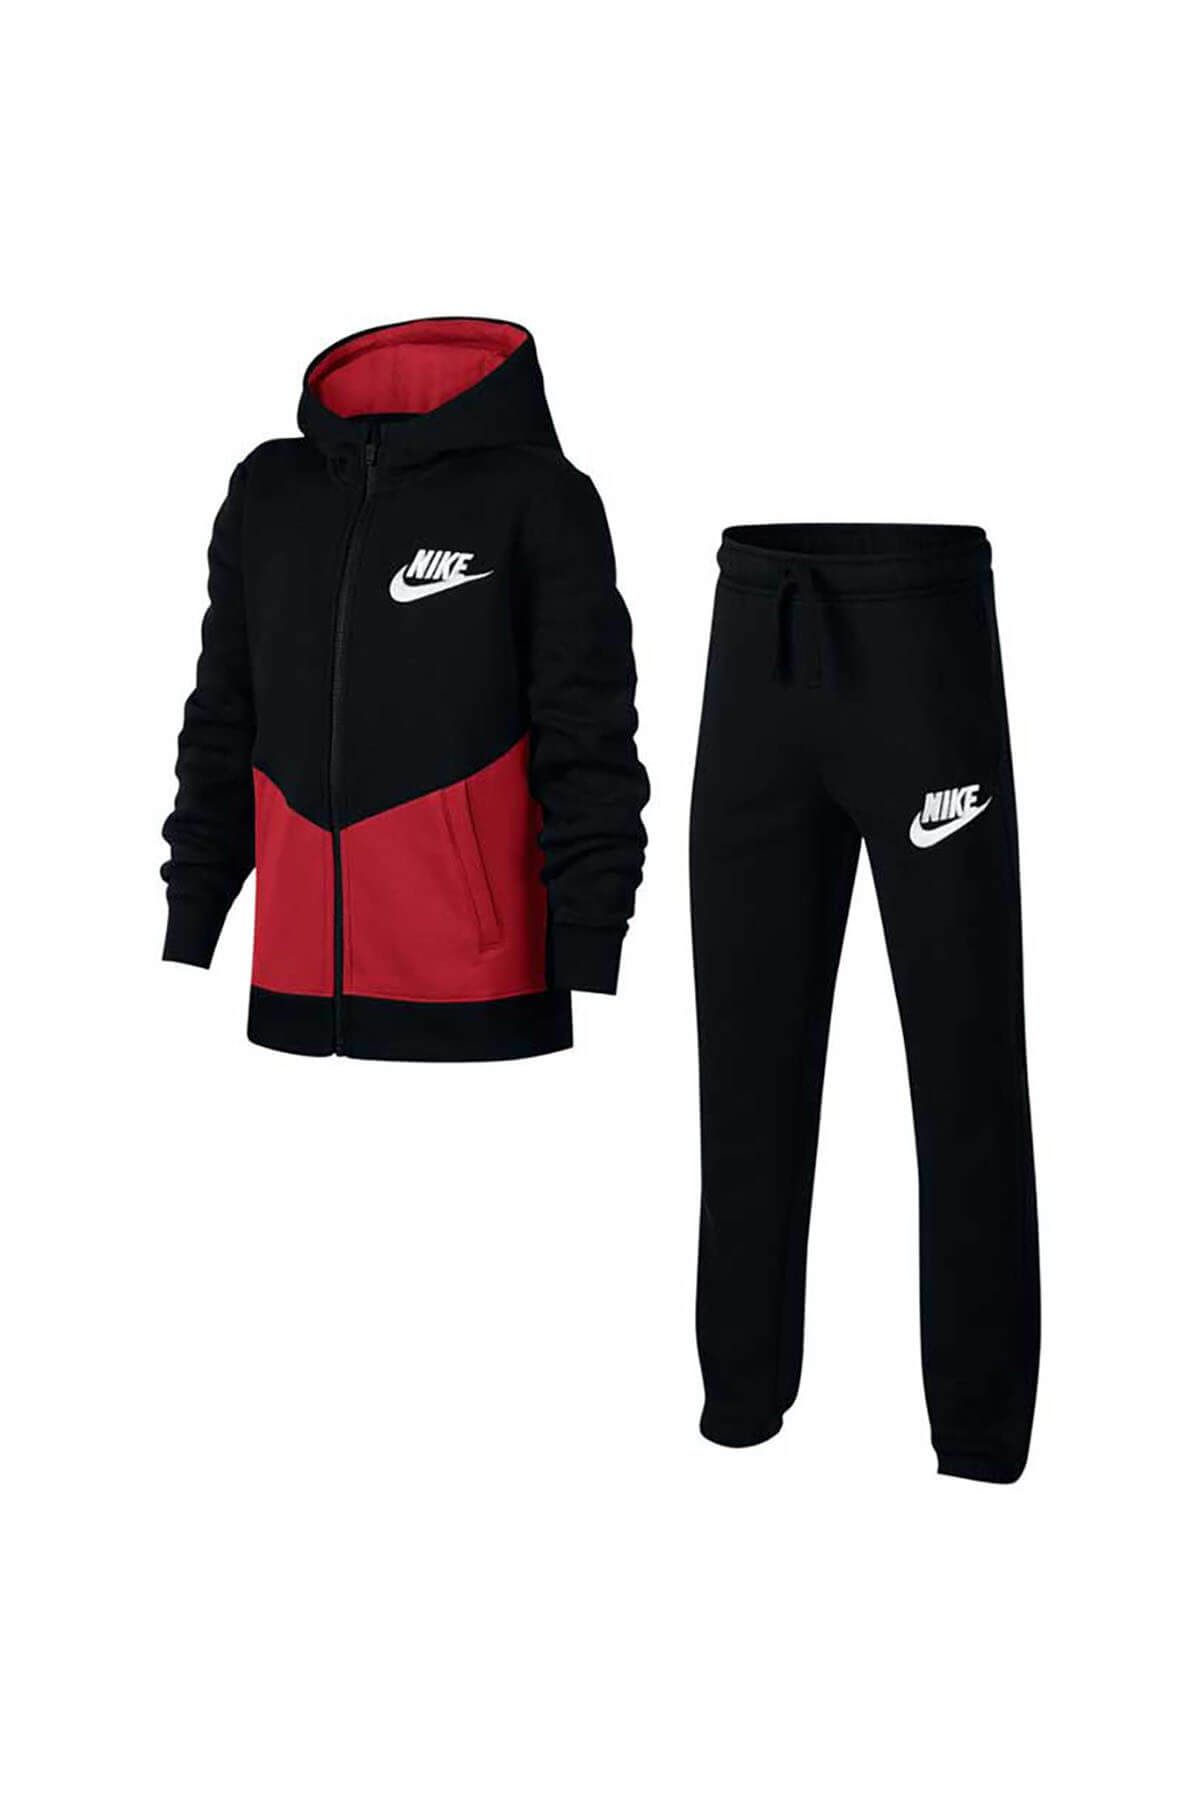 Nike Siyah Kırmızı Unisex Çocuk Eşofman Takımı 856205-014